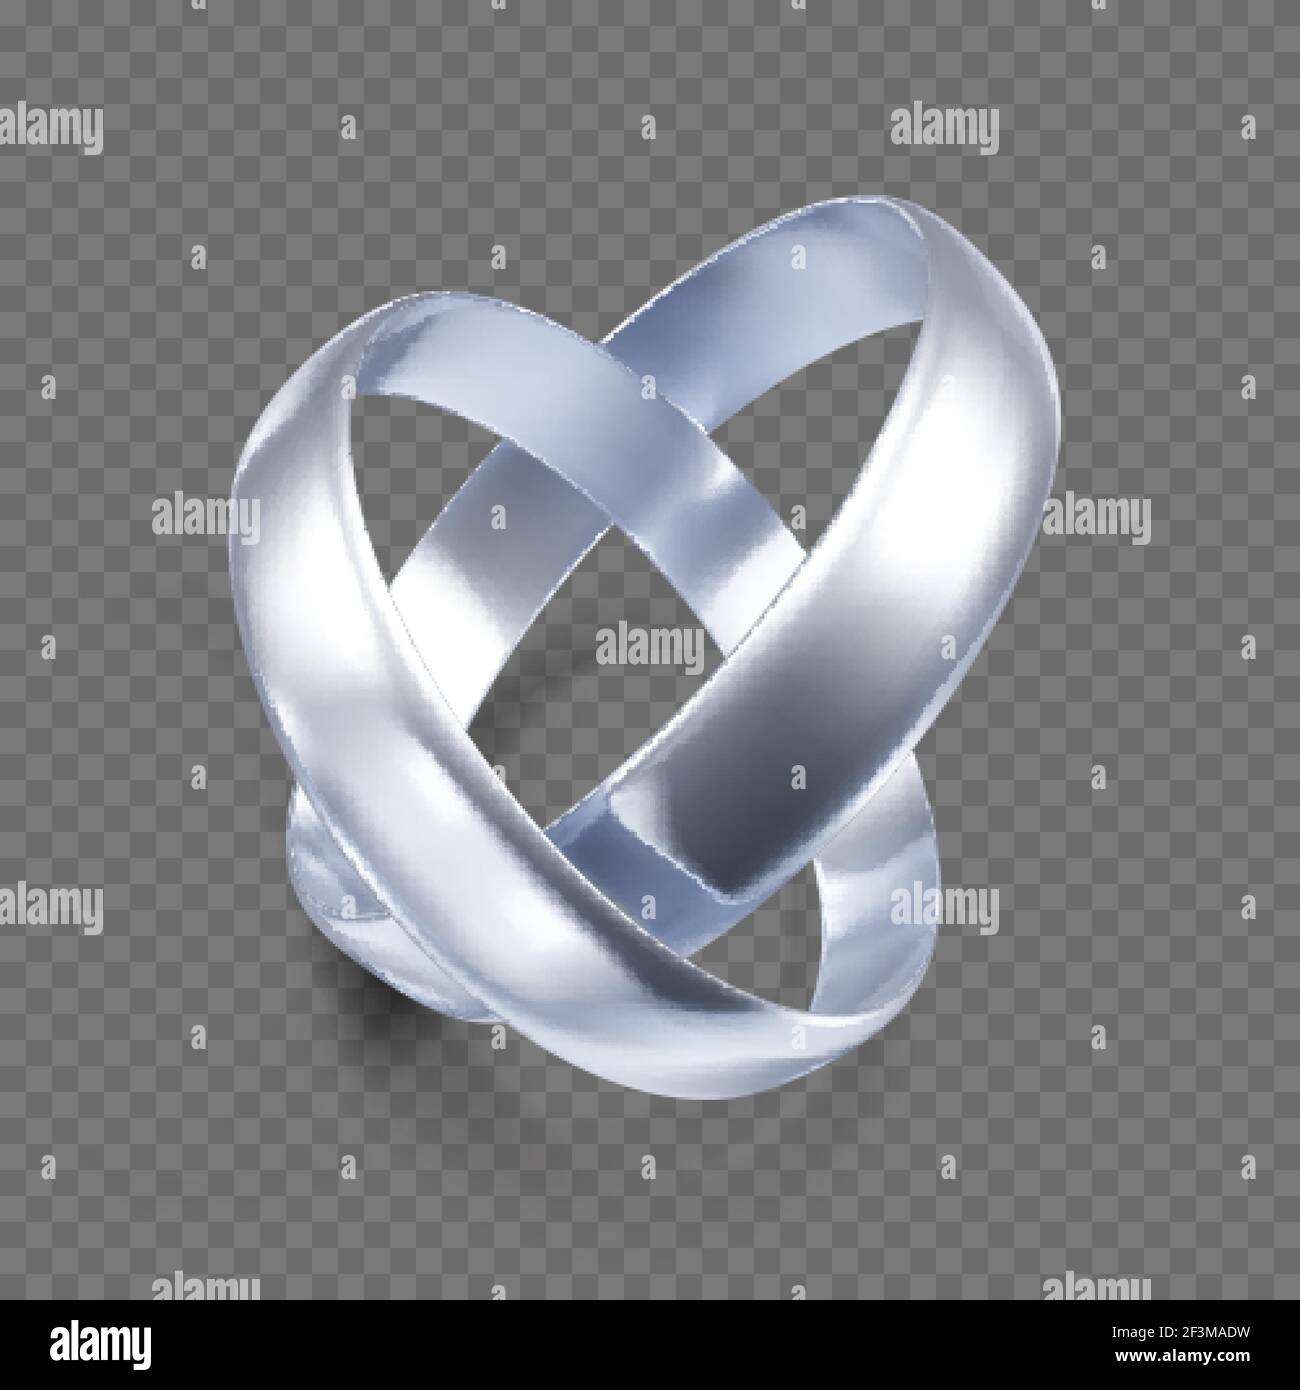 Coppia di anelli di nozze in argento o platino. oggetto di gioielleria 3d. Illustrazione vettoriale isolata su sfondo trasparente Illustrazione Vettoriale